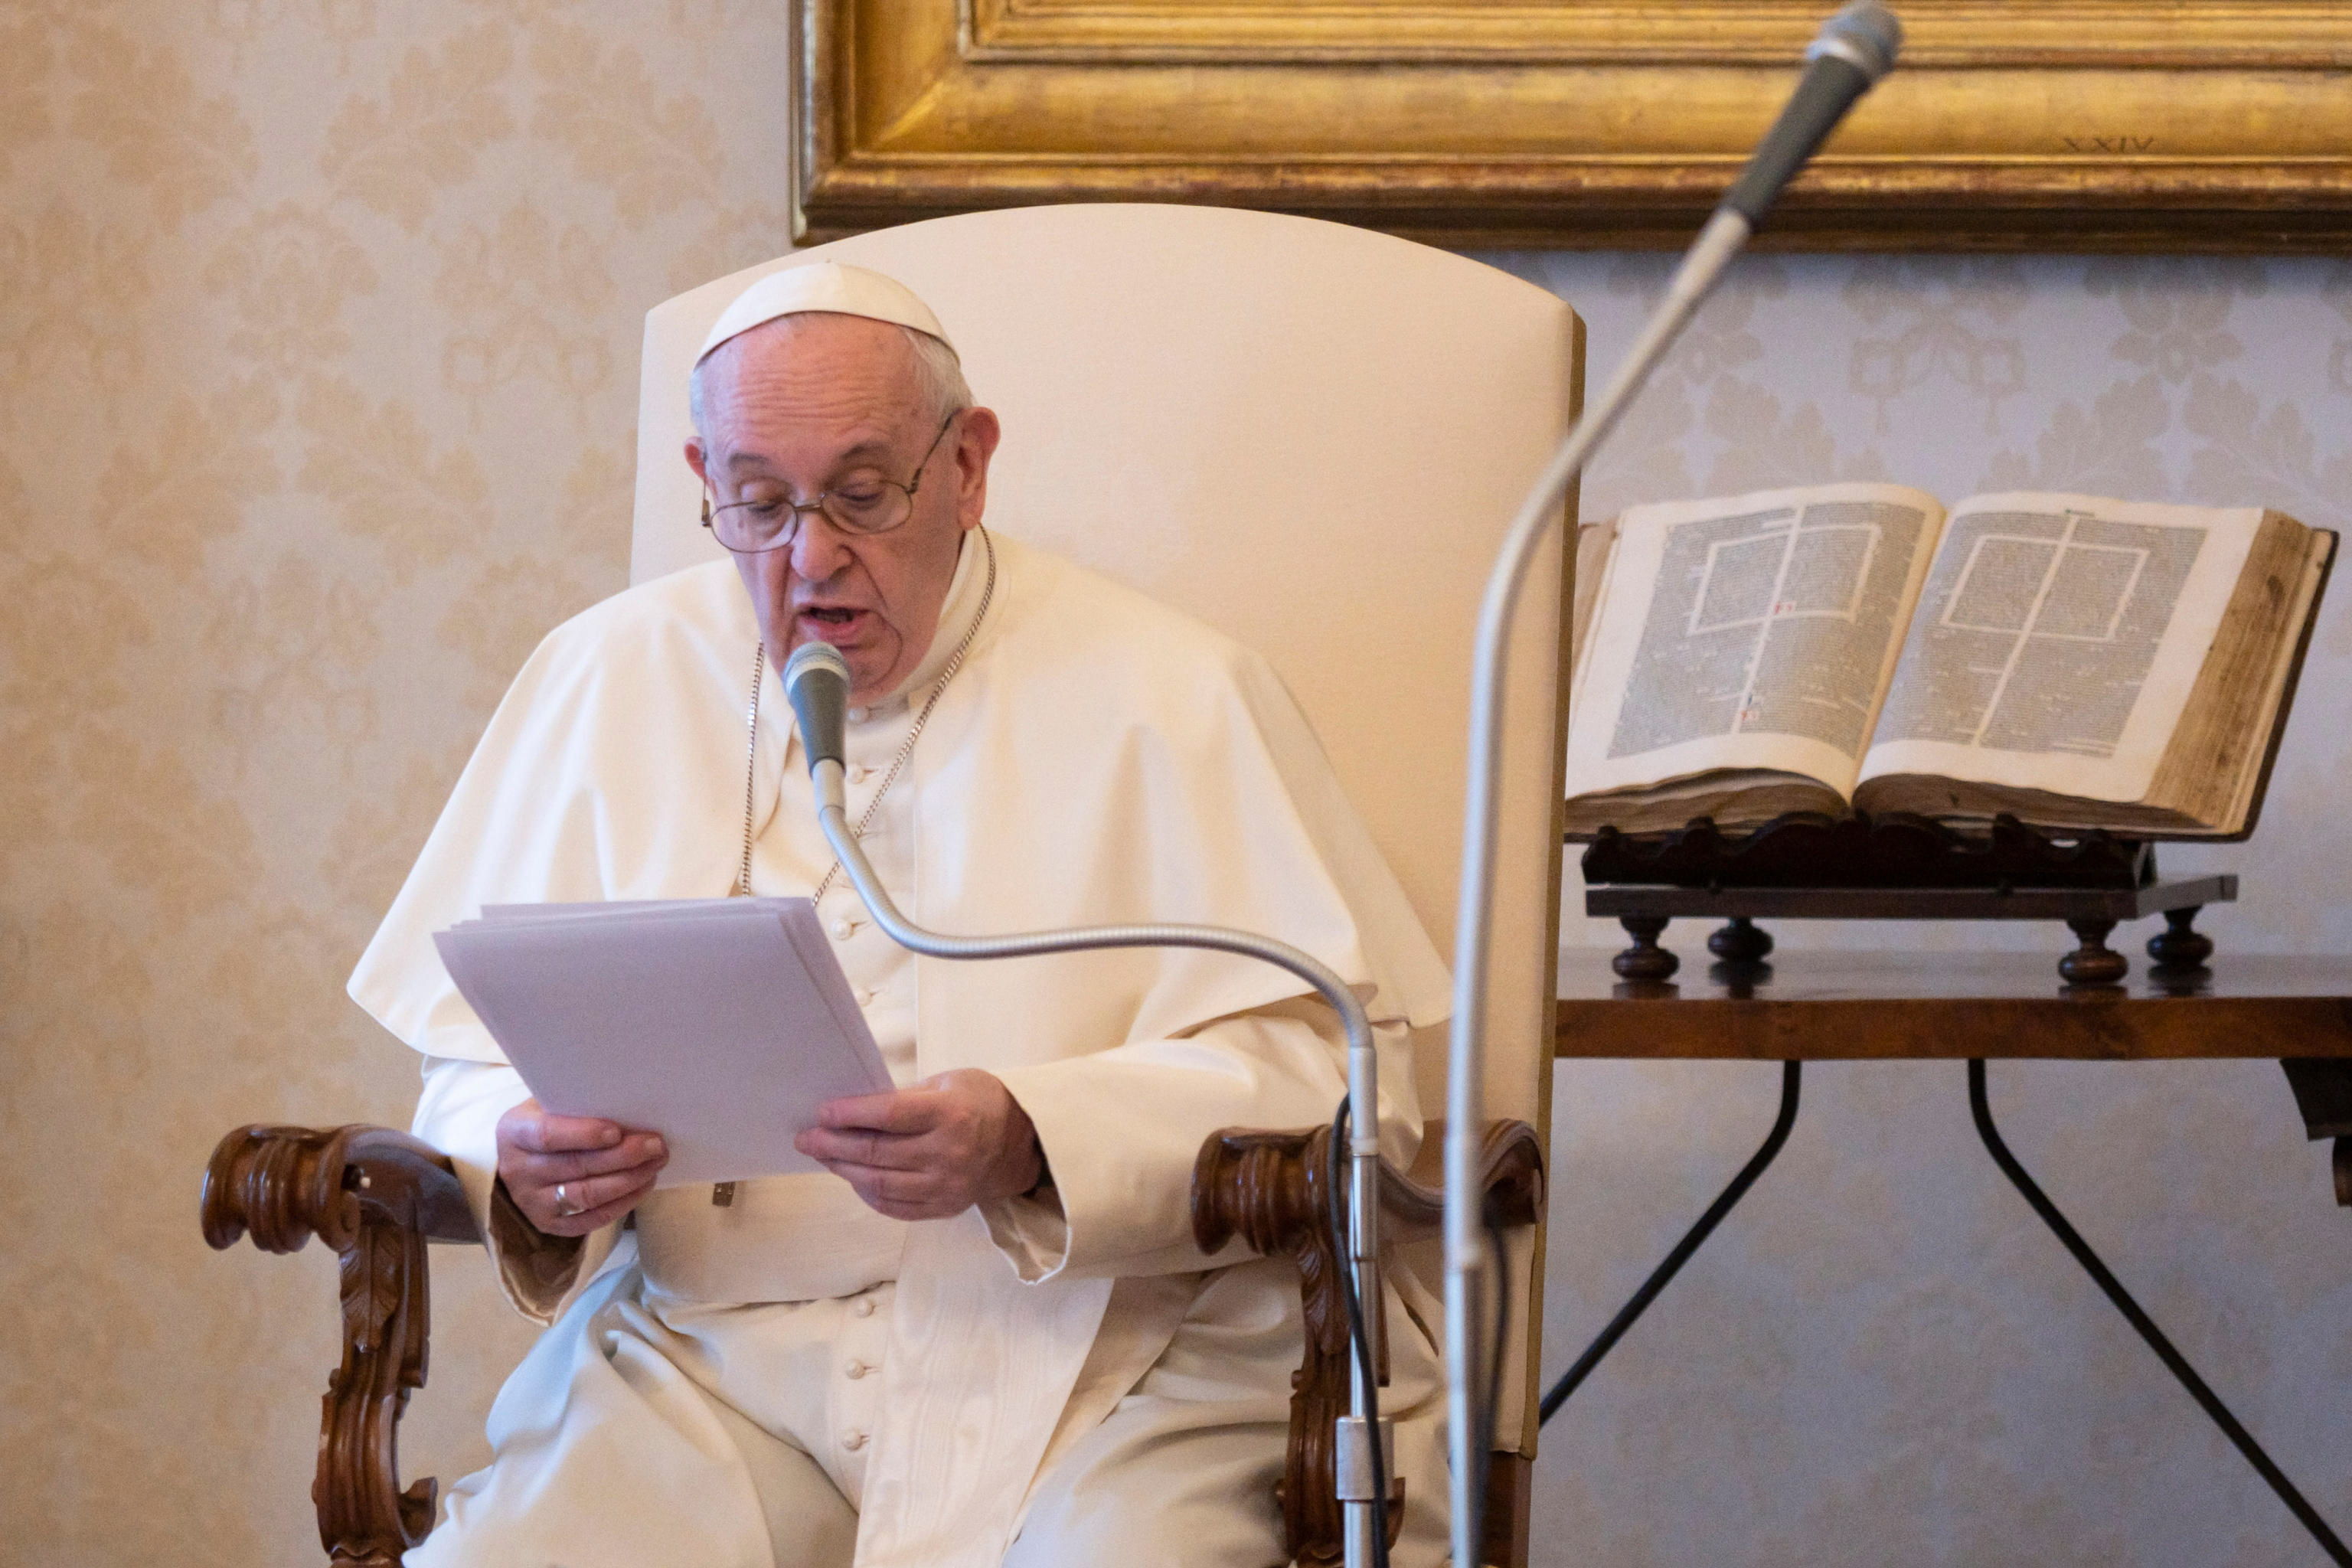 El papa Francisco dijo que la pandemia debe generar un cambio positivo en las personas. (Foto Prensa Libre: EFE)